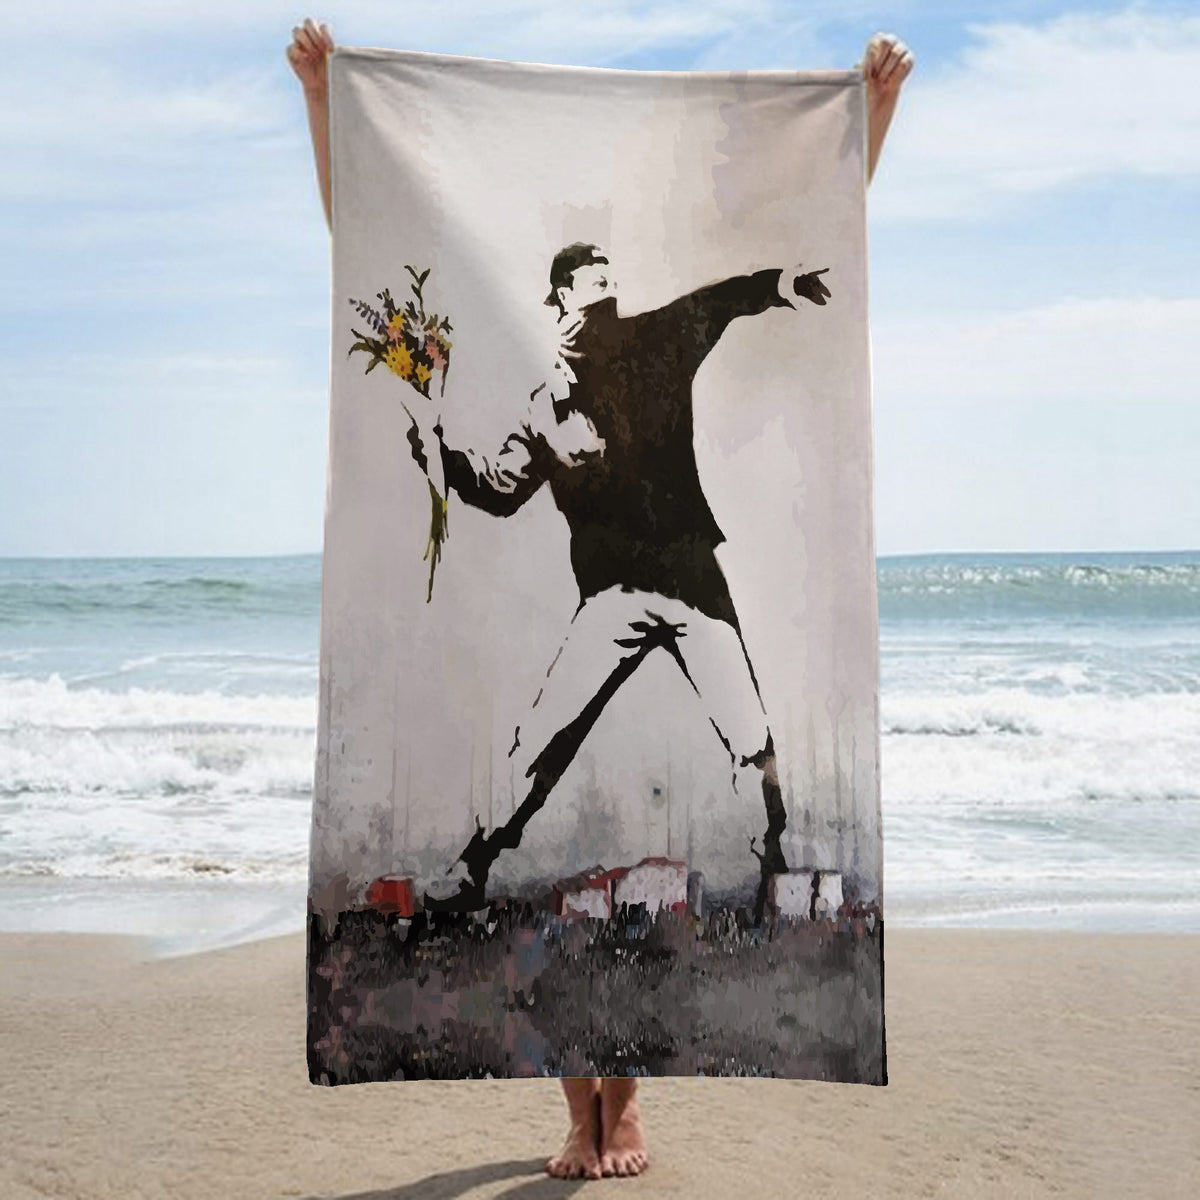 Beach towel - Urban / Street Art - Flower thrower